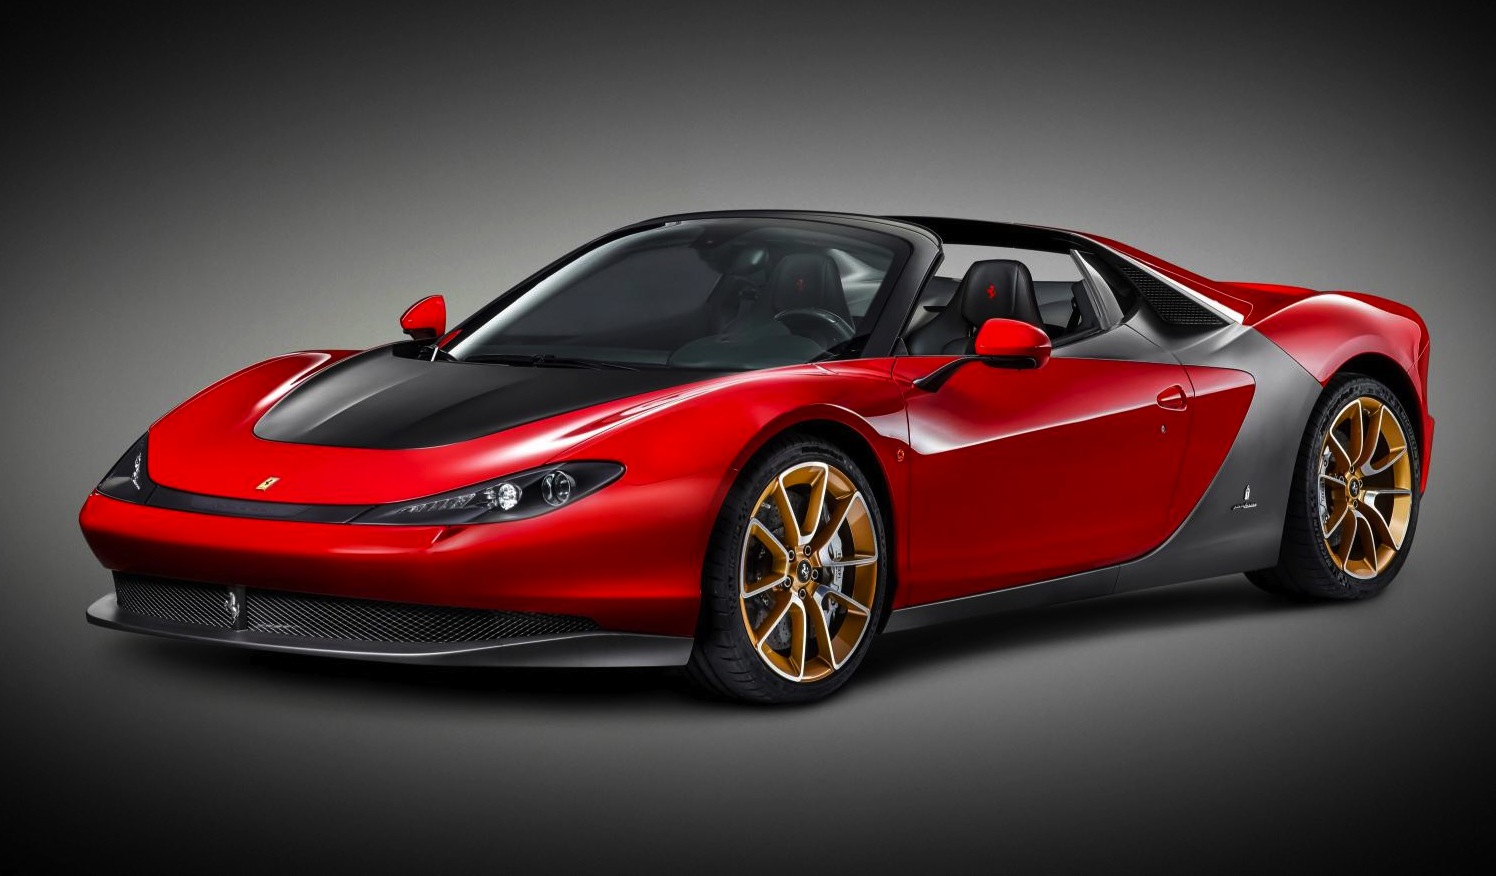 Ferrari developing new entry model, to rival McLaren 570S